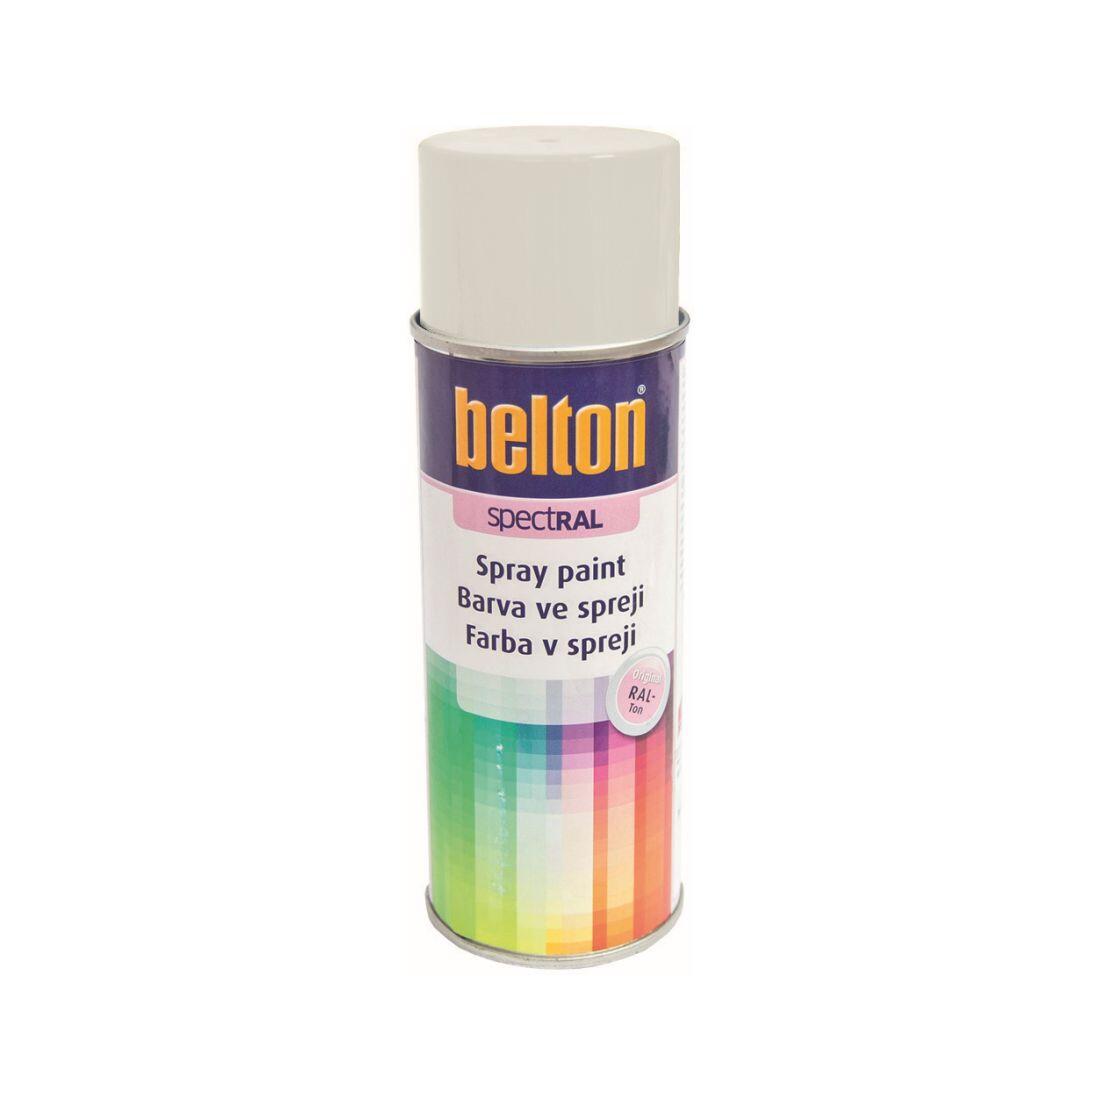 barva ve spreji BELTON RAL 9003, 400ml BÍ signální 0.31 Kg MAXMIX Sklad14 825571 11